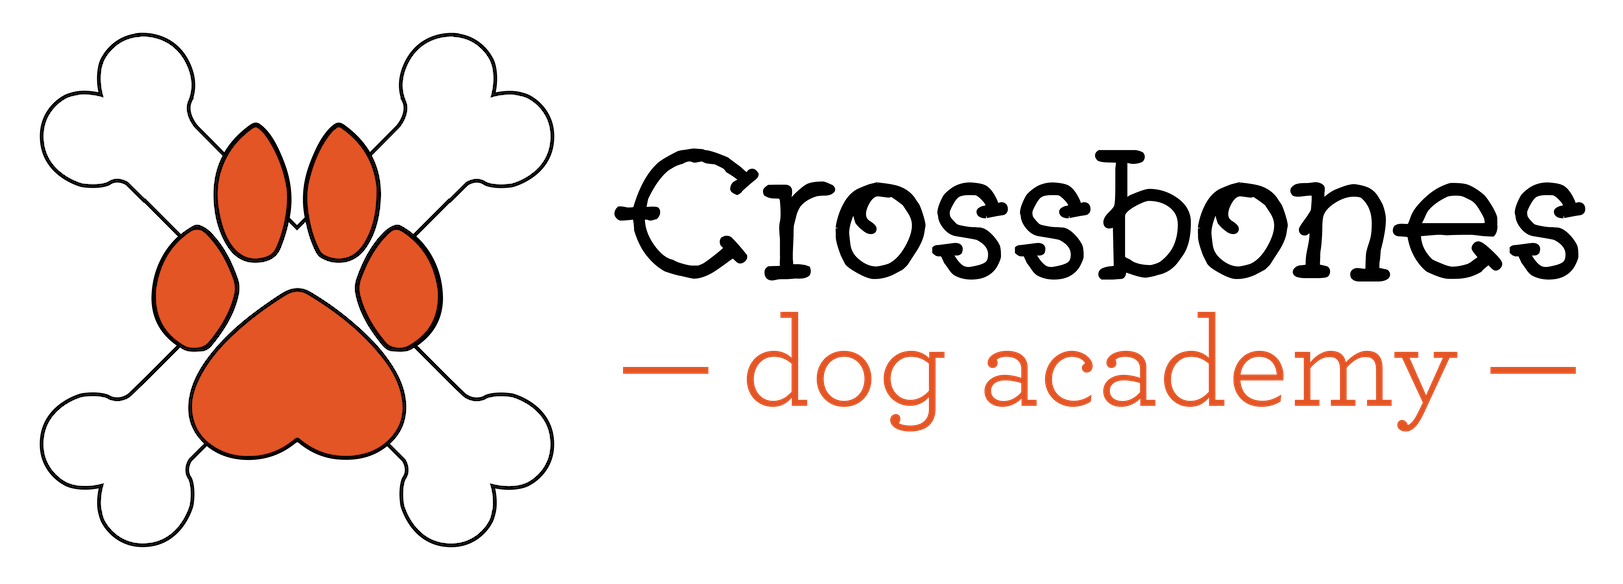 Crossbones Dog Academy